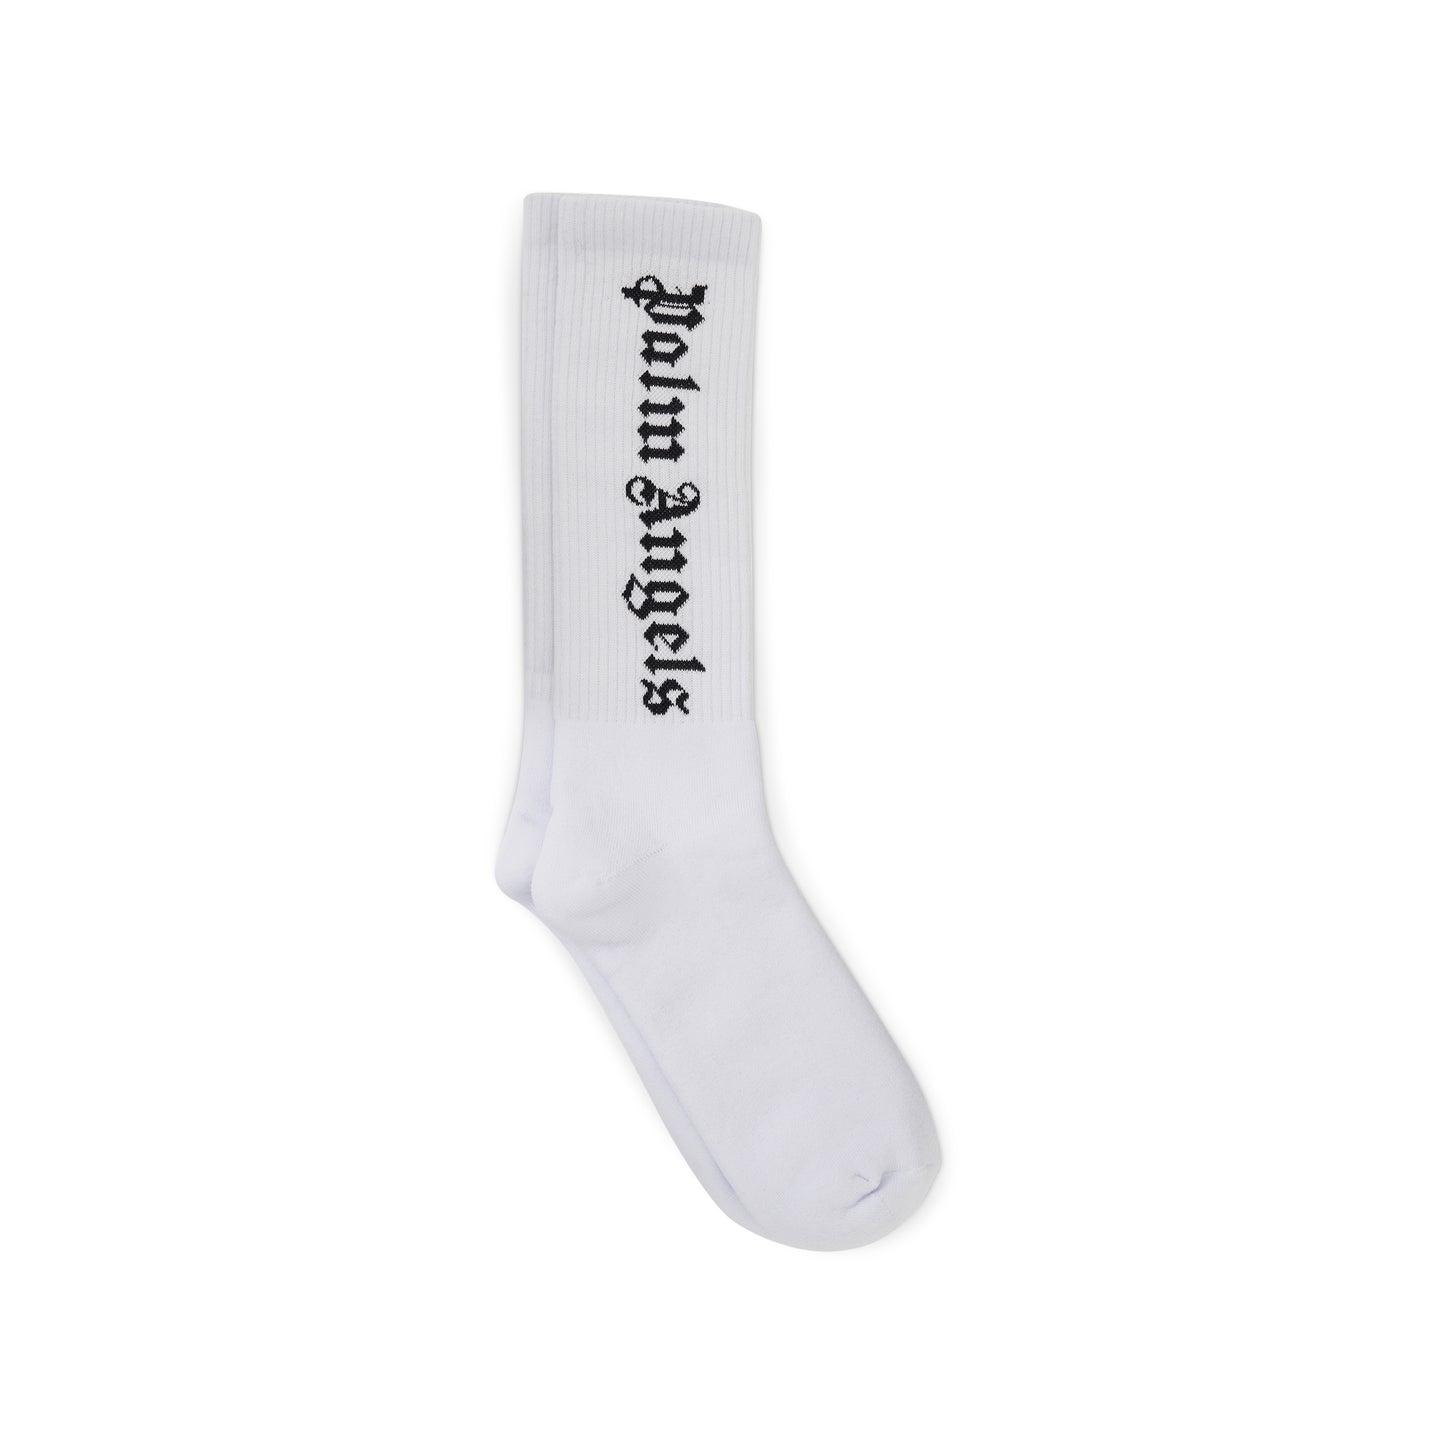 Vertical Logo Socks in White/Black